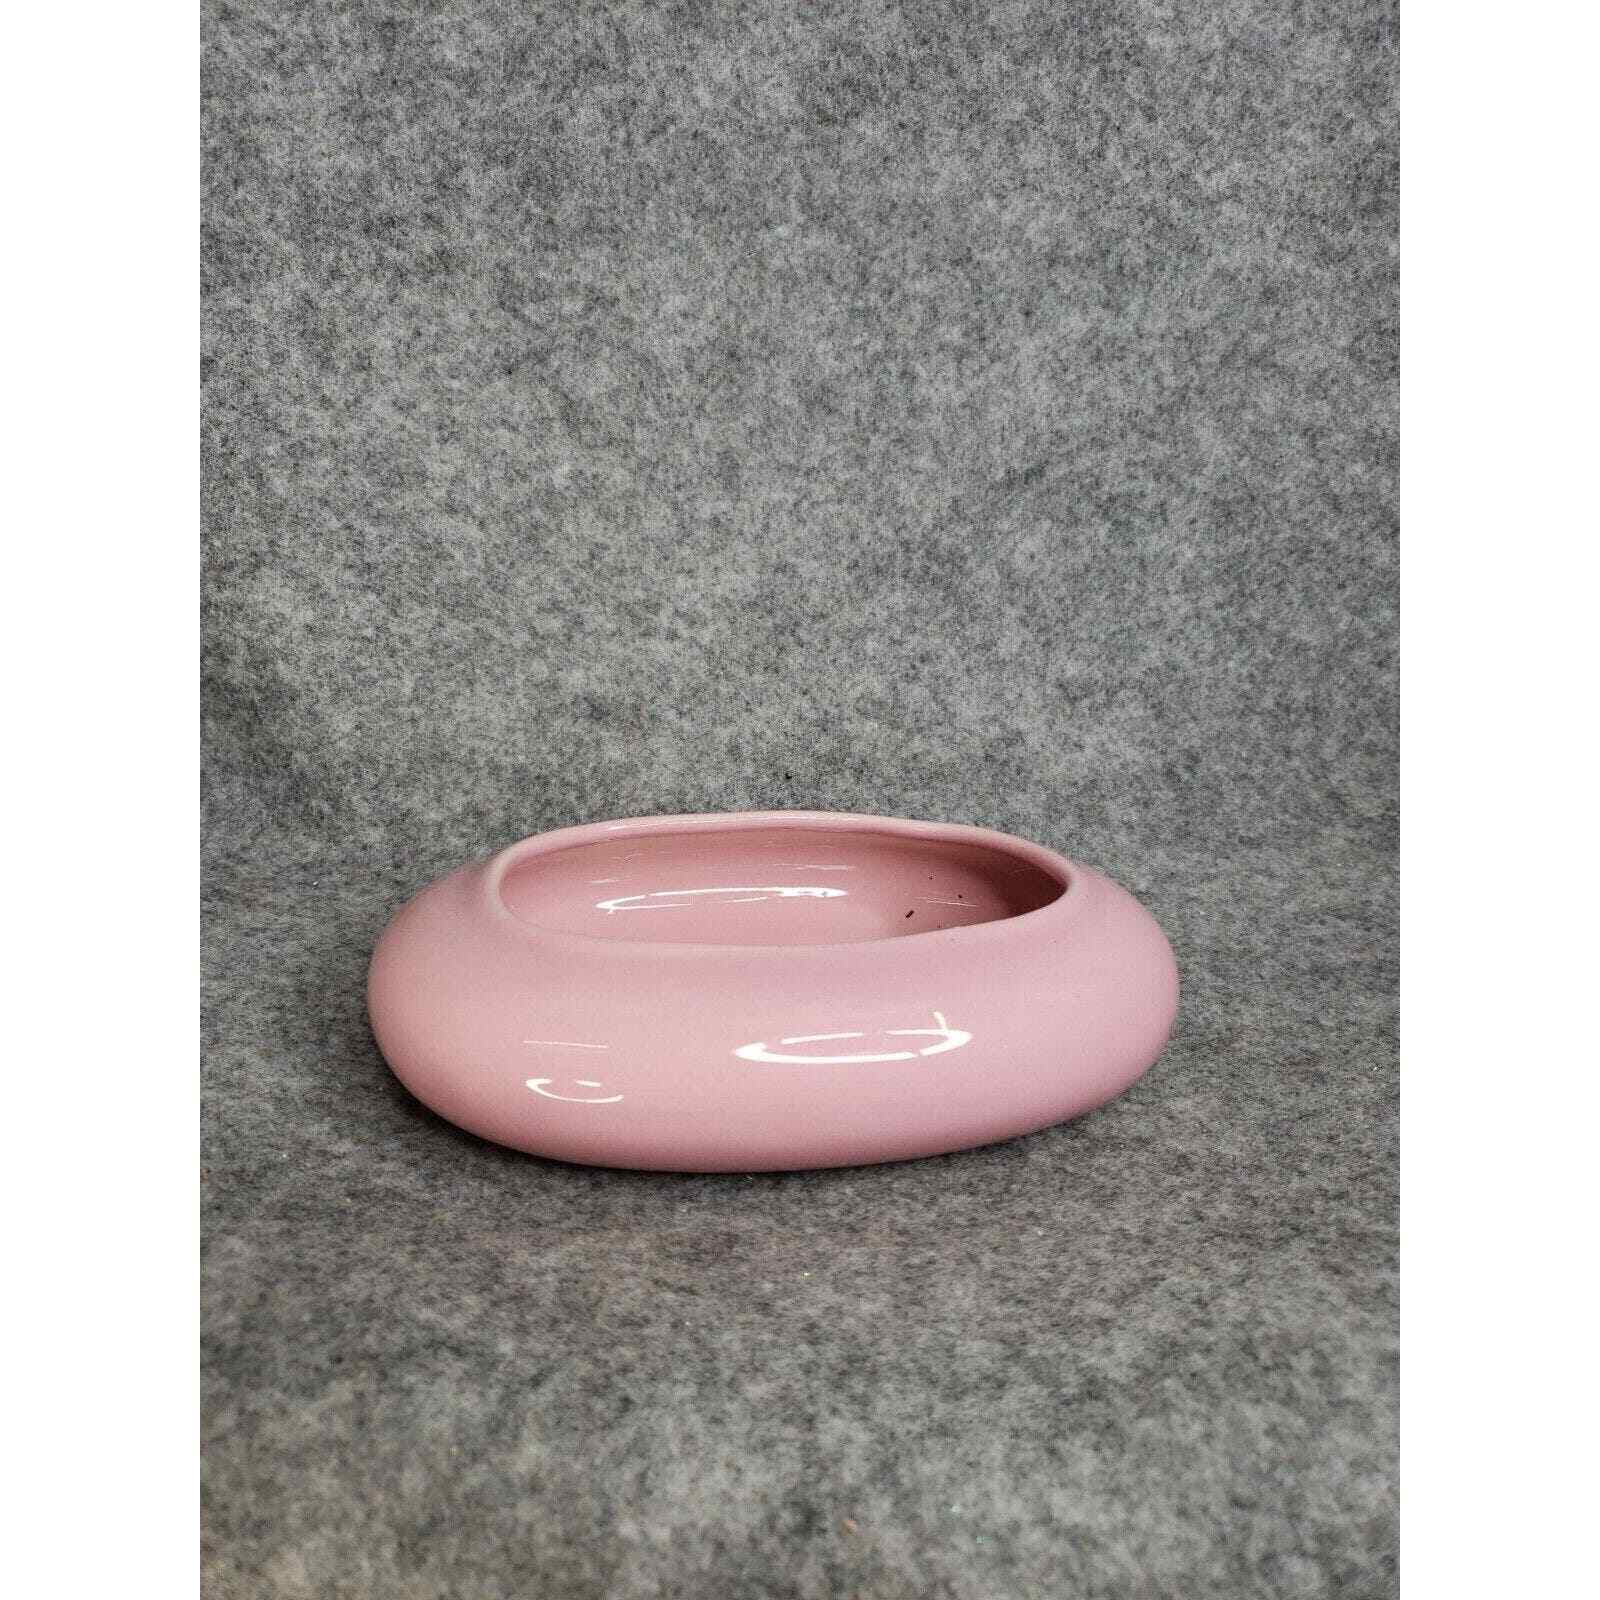 Vintage Haeger Oblong Ceramic Porcelain Planter Vase Rounded Pink Solid Home Dec